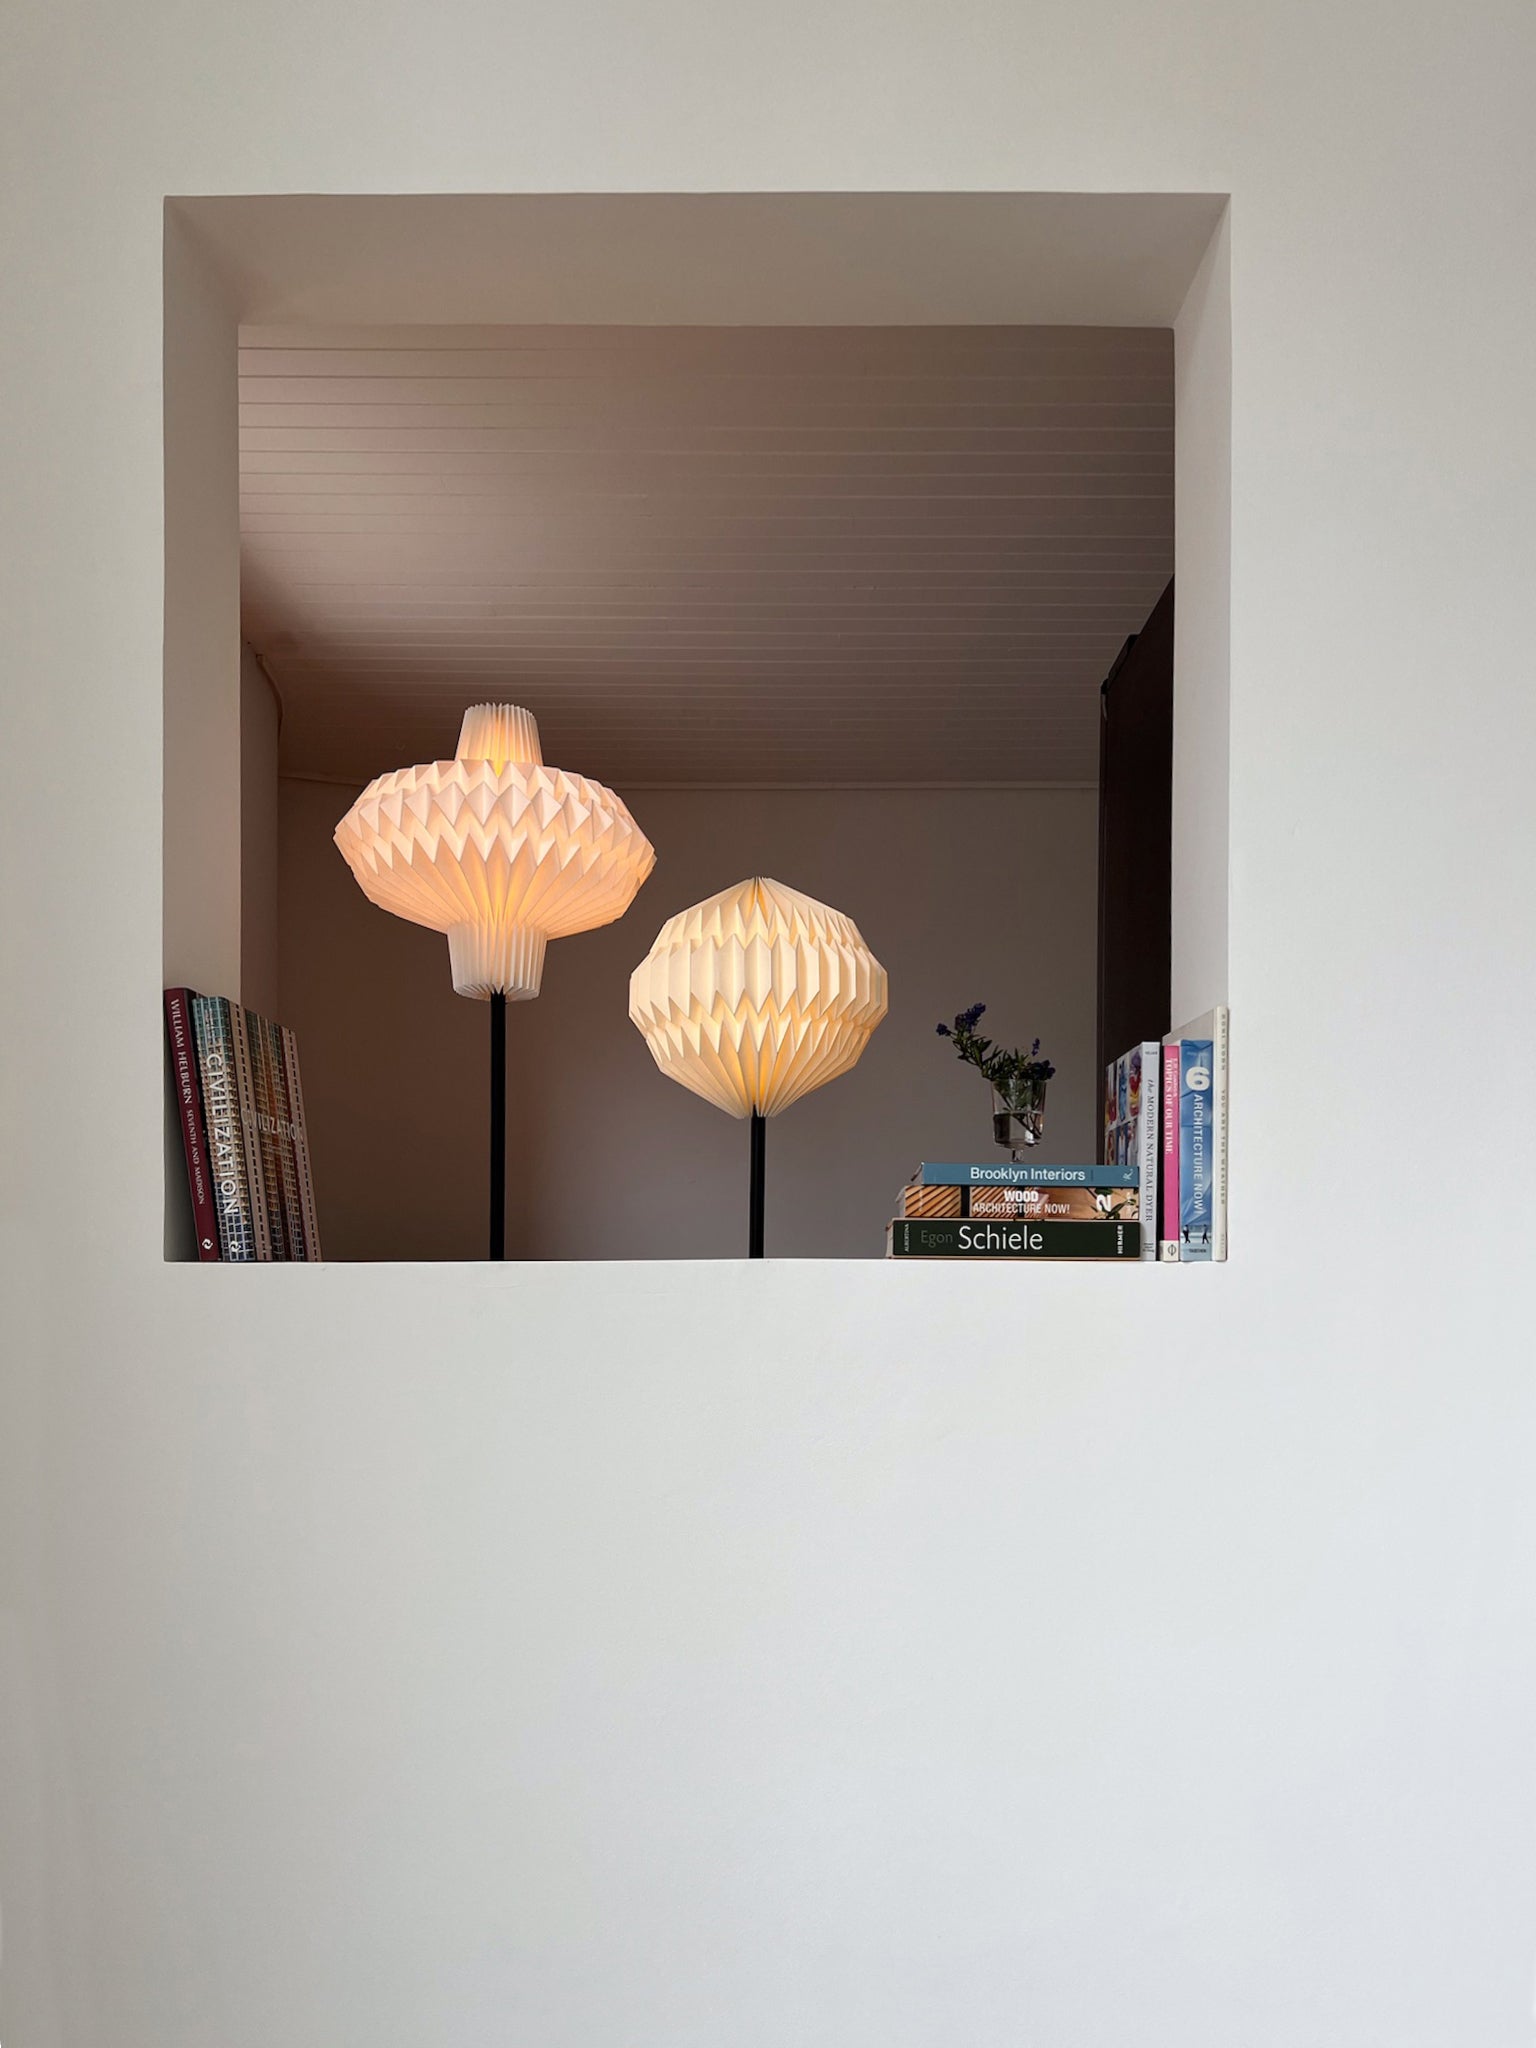 Lámpara de piso con caperuza redonda fabricada en papel al lado de otra lámpara de piso